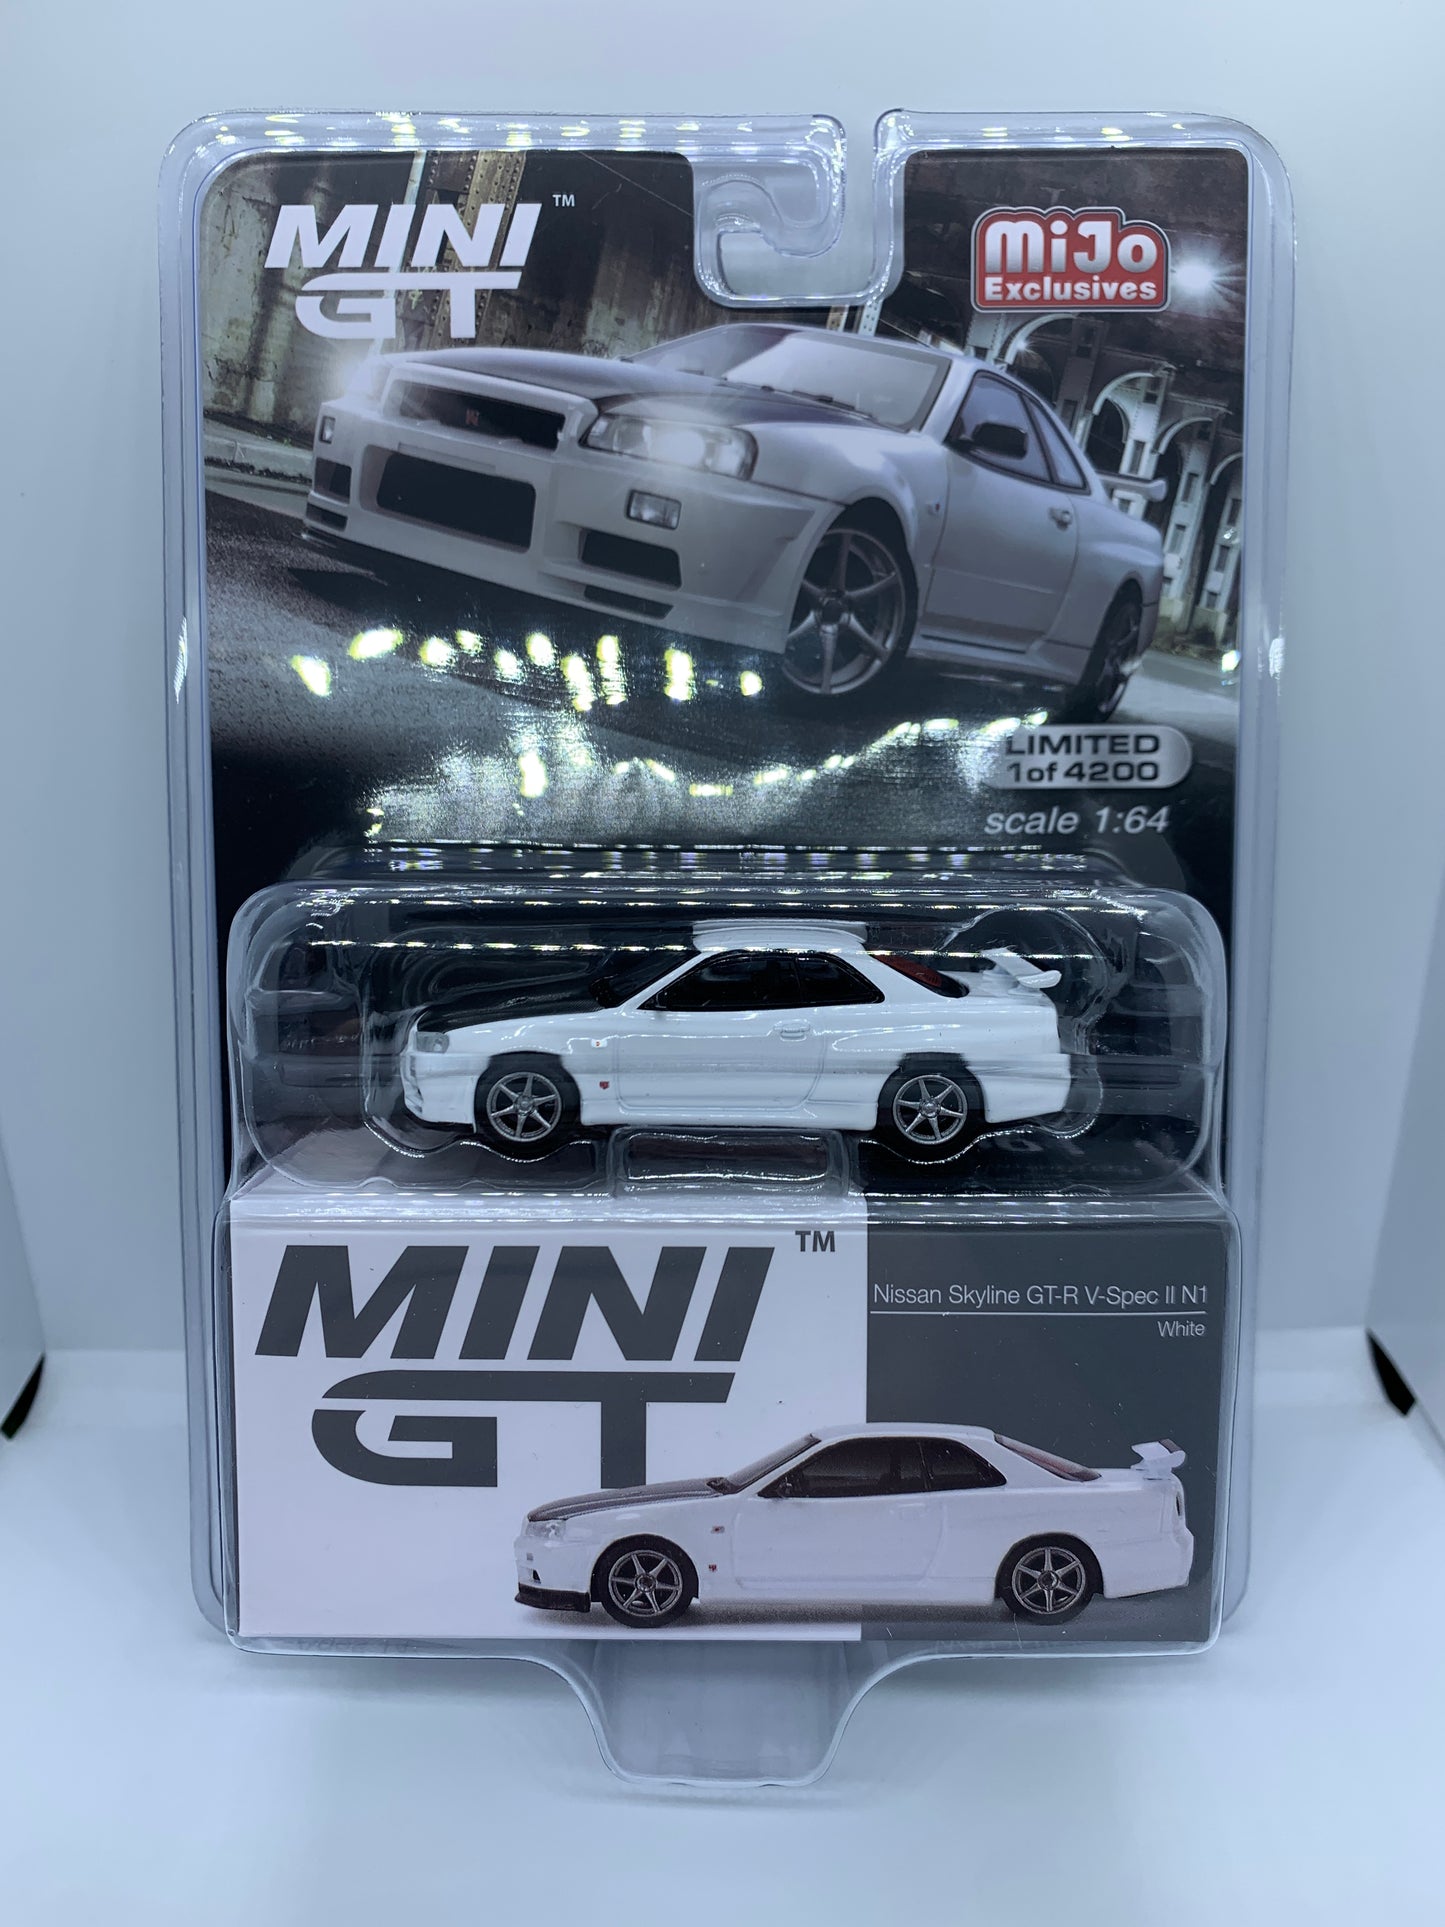 MINI GT - Nissan Skyline R34 GT-R V-Spec II N1 White - Display Blister Packaging